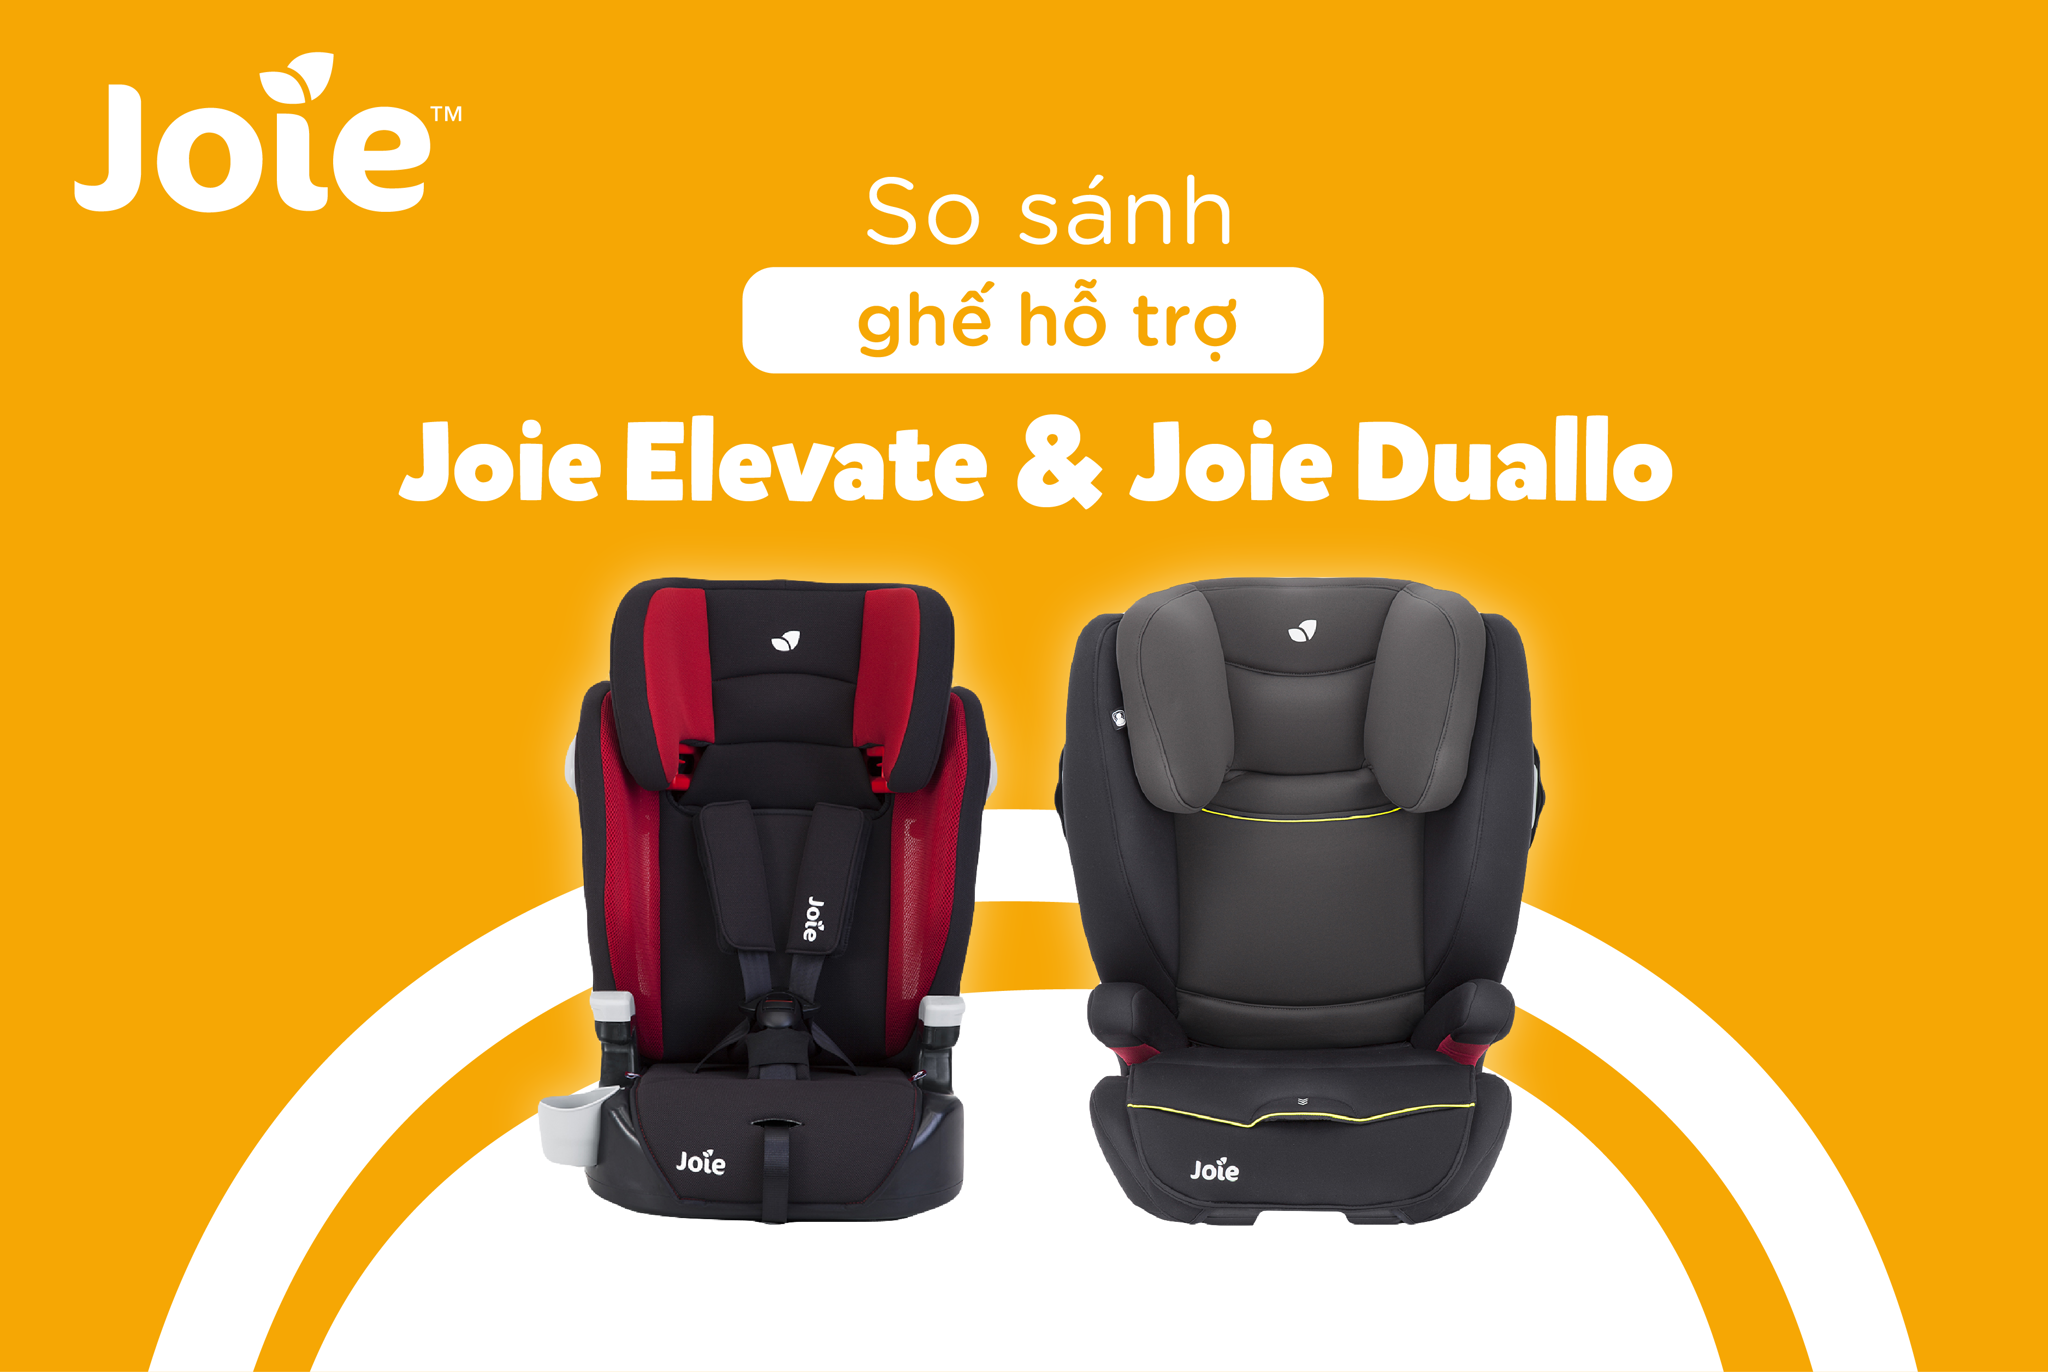 So sánh ghế ô tô hỗ trợ cho bé: Joie Elevate và Joie Duallo